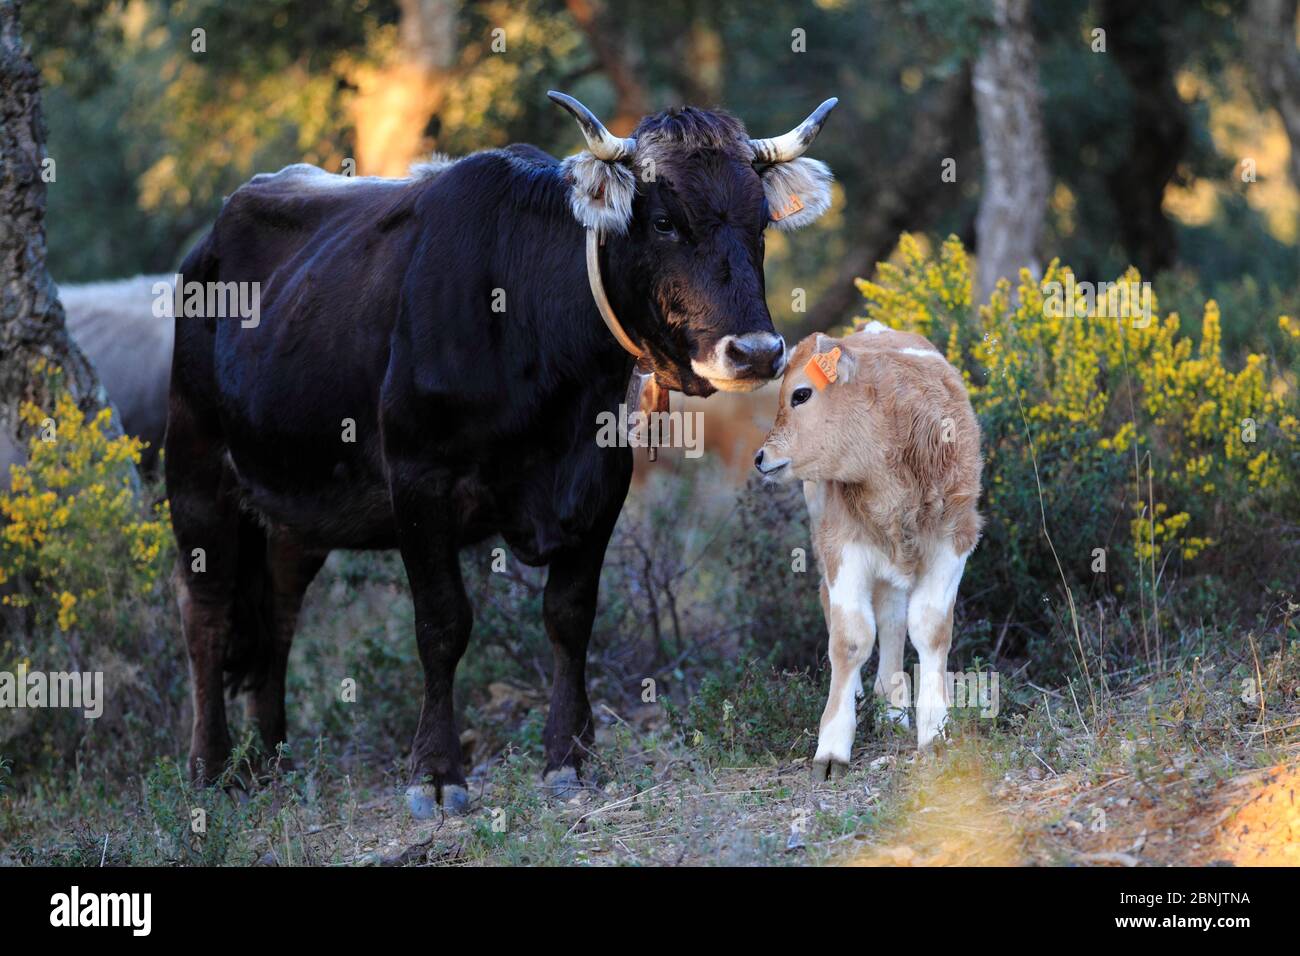 Fangine croise le bétail, le veau et la femelle Negra avec une cloche autour du cou, les montagnes Alberes, les Pyrénées, France Banque D'Images